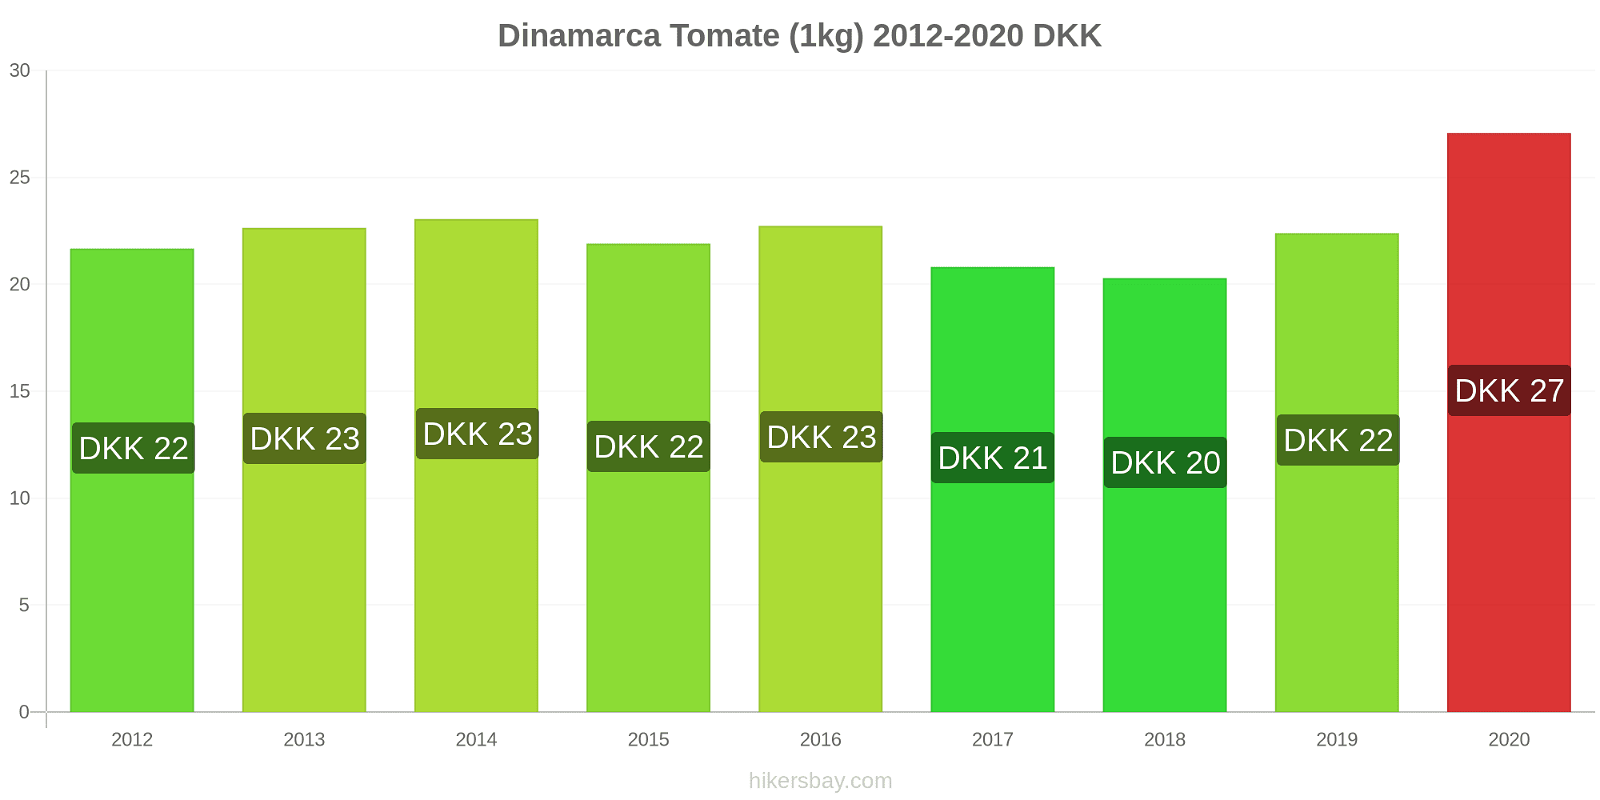 Dinamarca cambios de precios Tomate (1kg) hikersbay.com